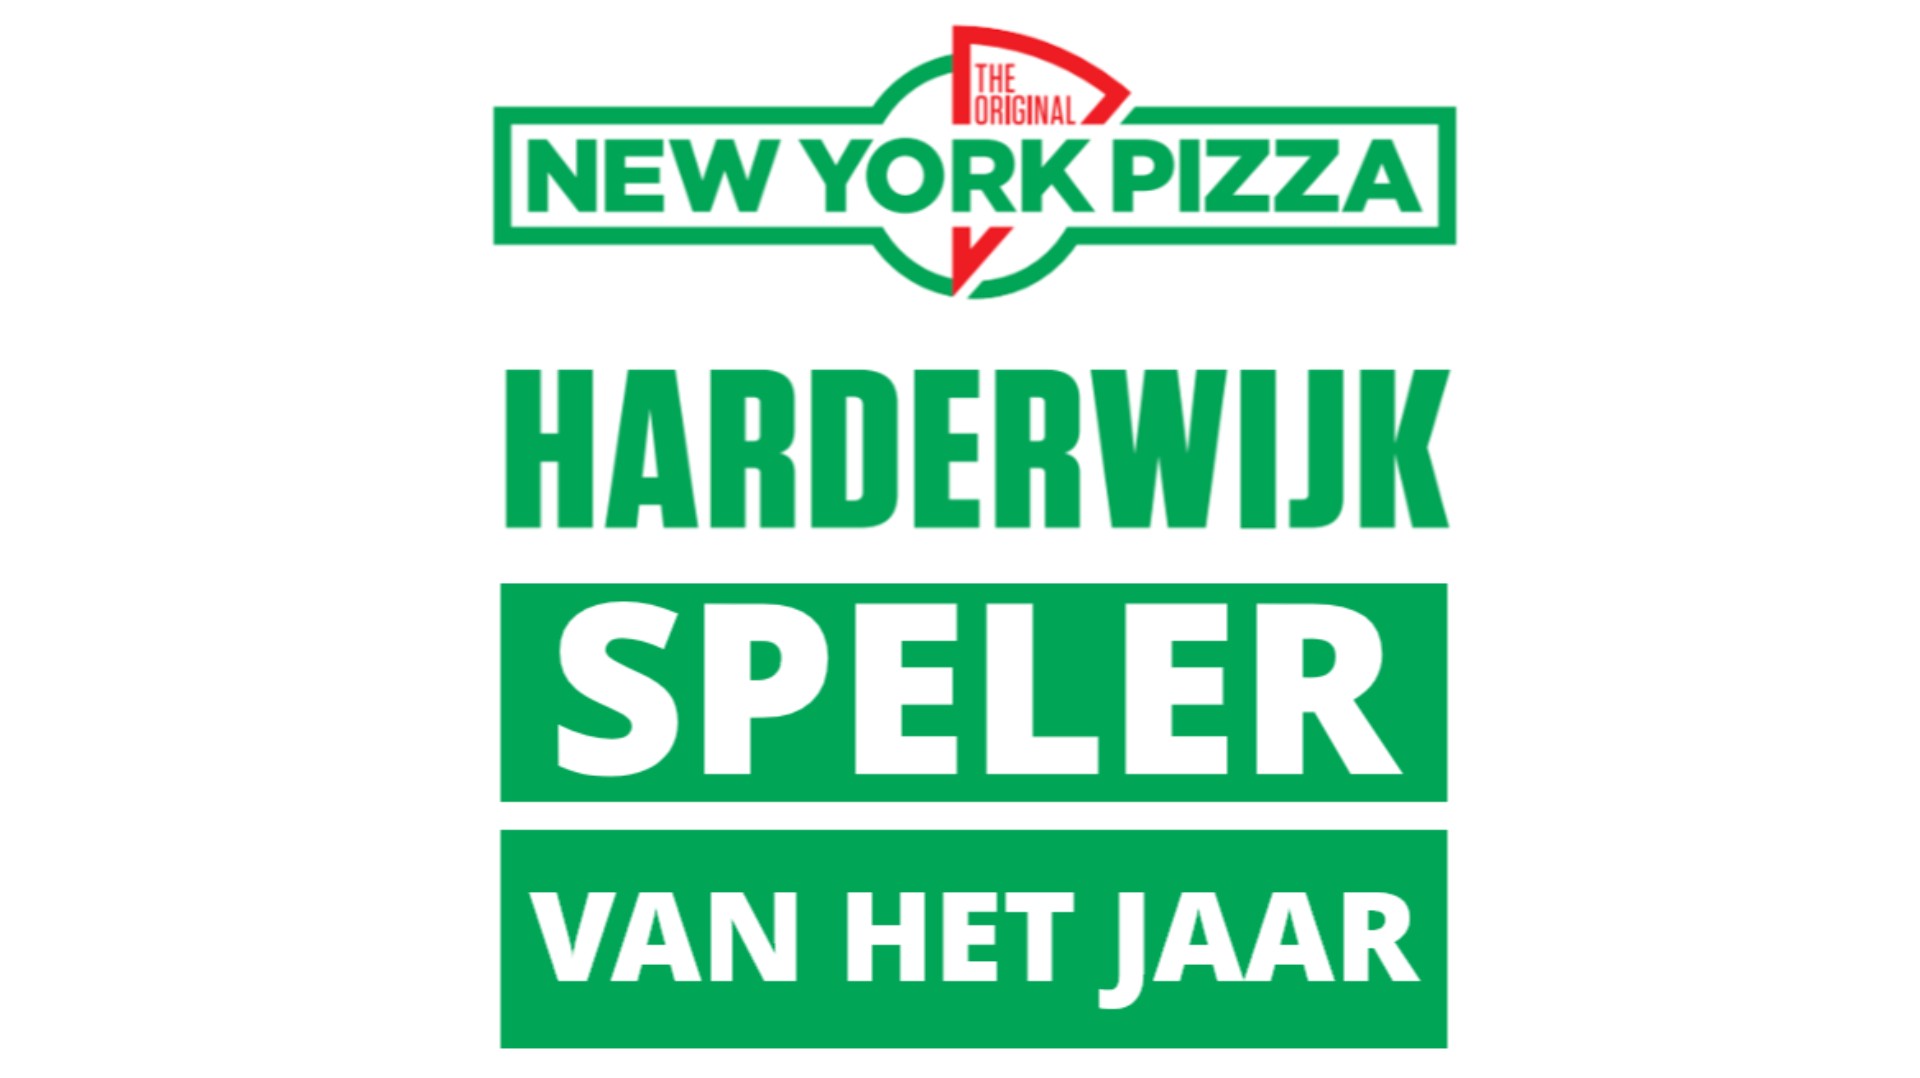 NEW YORK PIZZA SPELER VAN HET JAAR